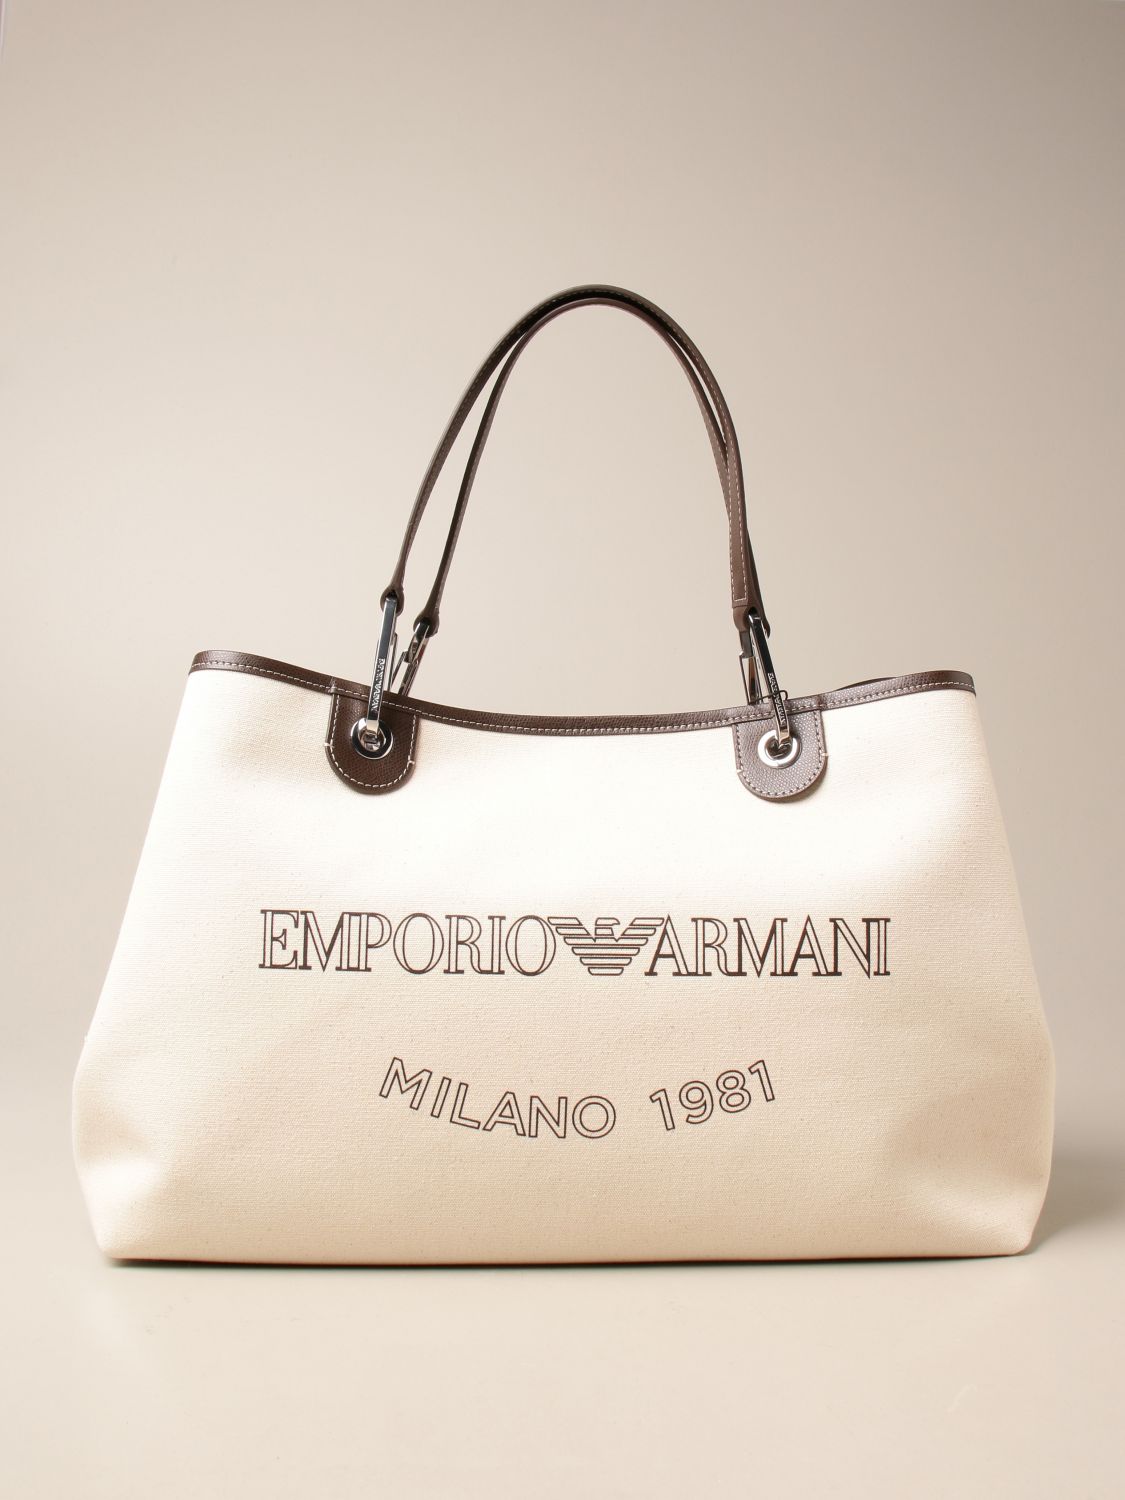 Emporio Armani canvas bag